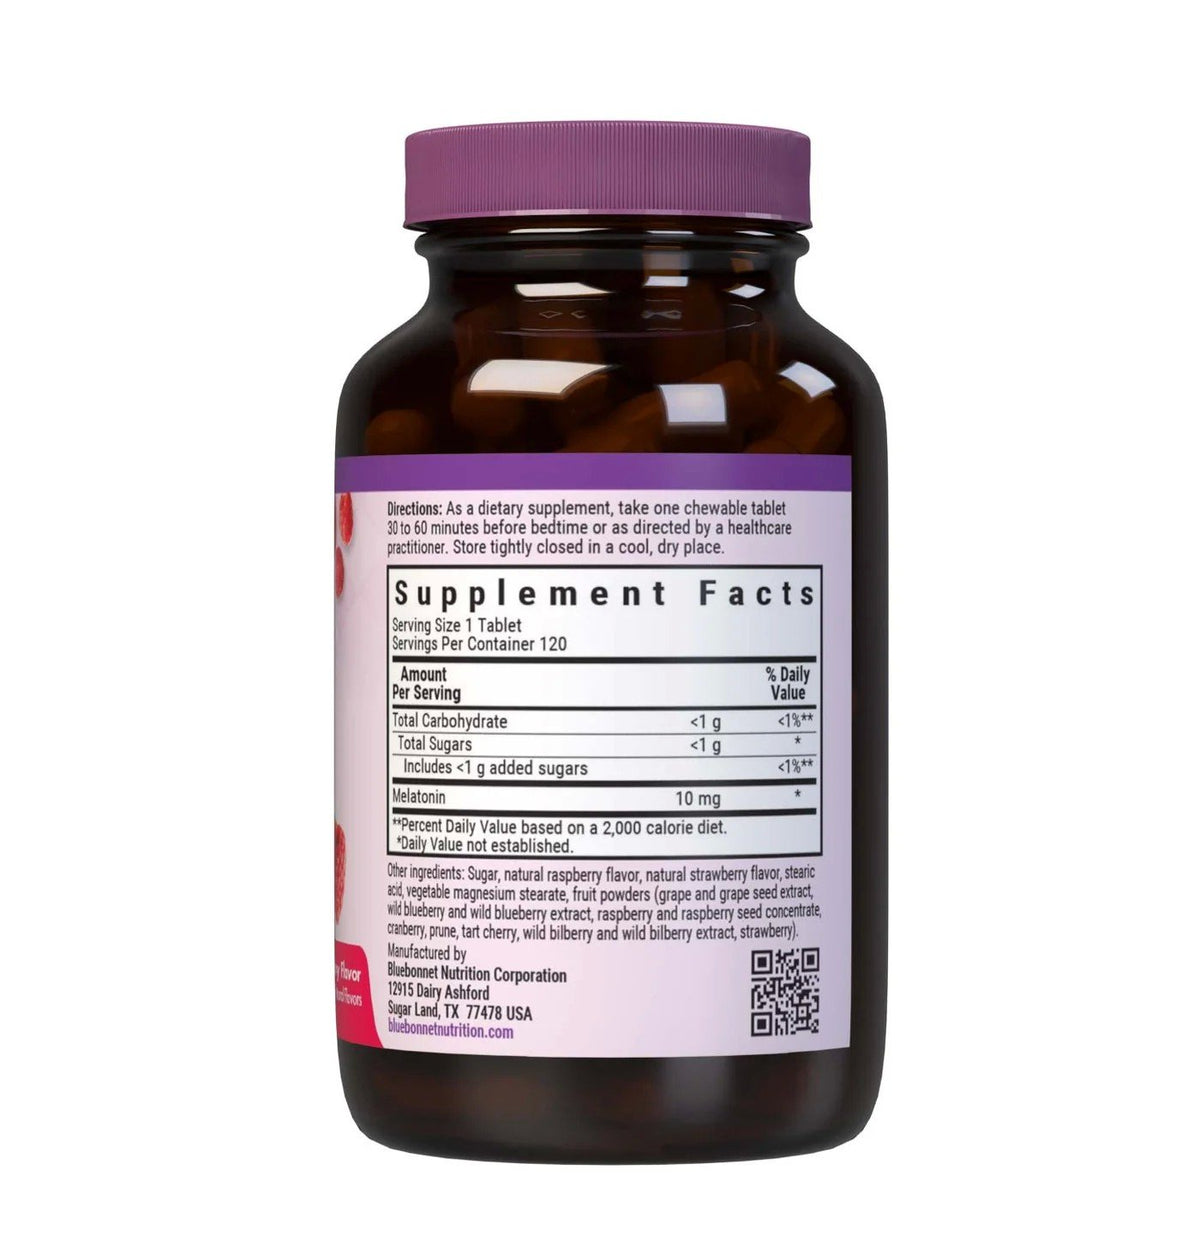 Bluebonnet Earth Sweet Chewable Melatonin 10 mg-Sleep Support 120 Chewable